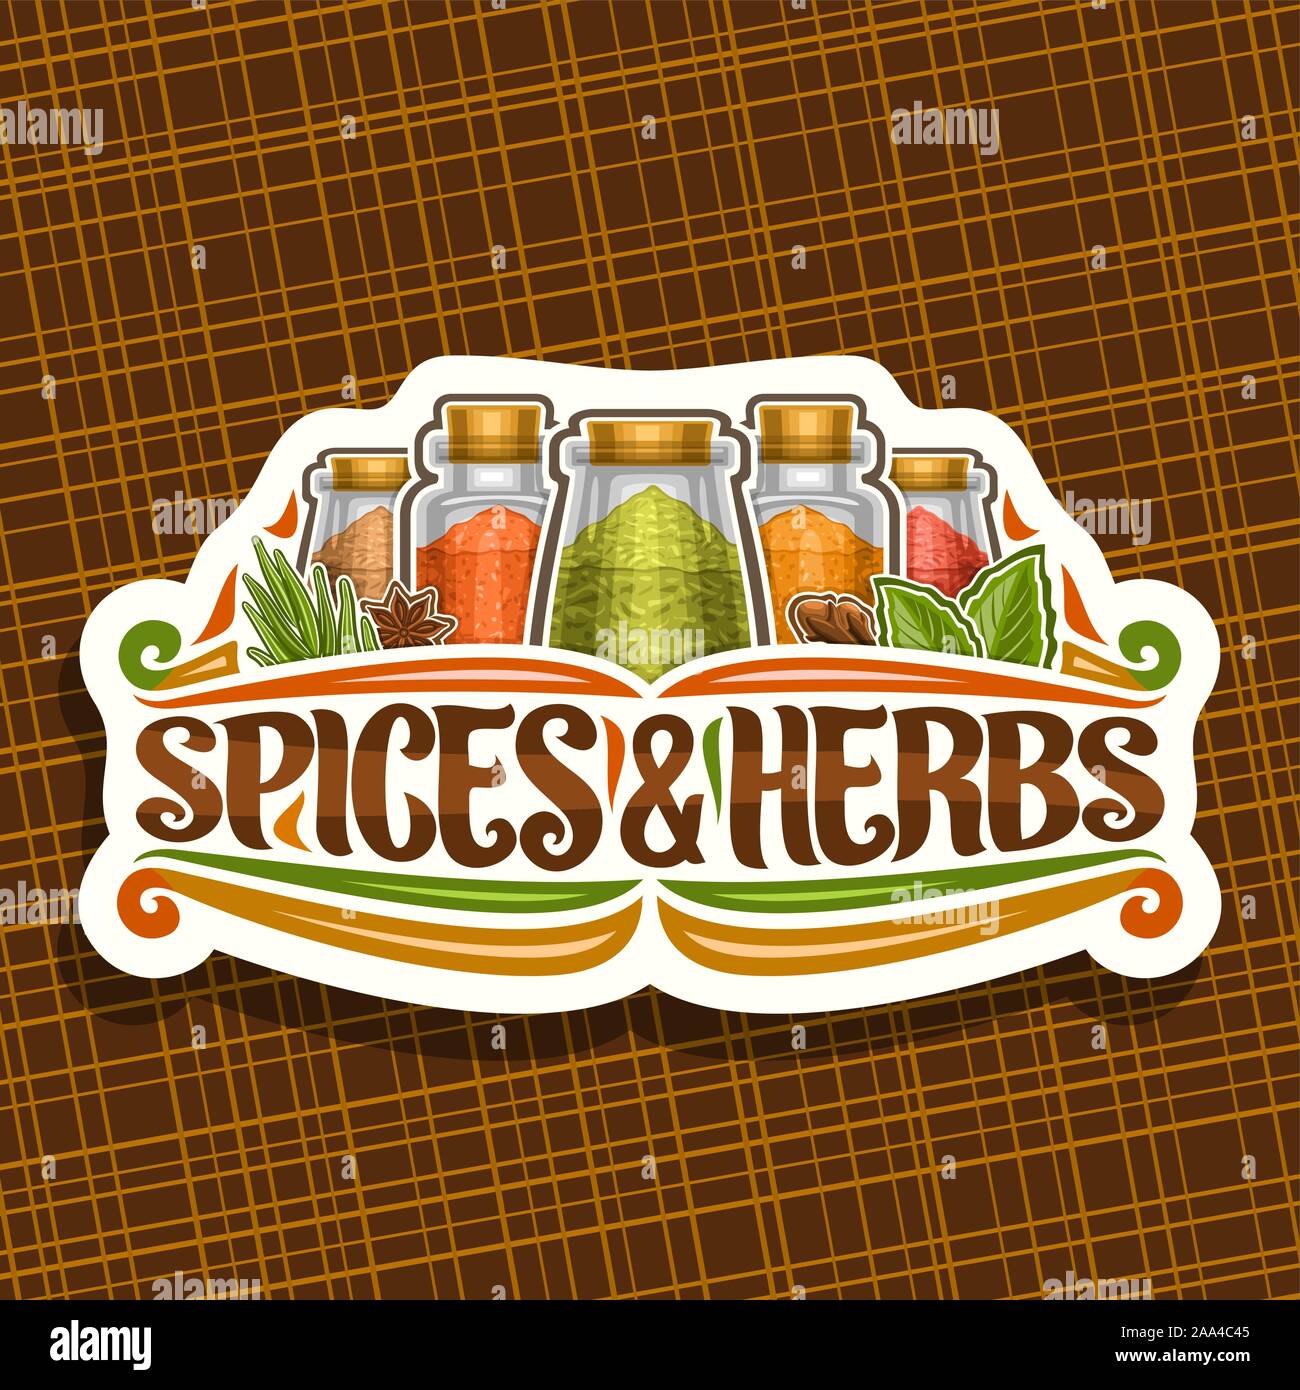 Logo Vector pour les épices et herbes, couper le papier décoratif signe avec illustration de l'ensemble des condiments indiens dans des boîtes en verre vintage, s'épanouit et ou Illustration de Vecteur